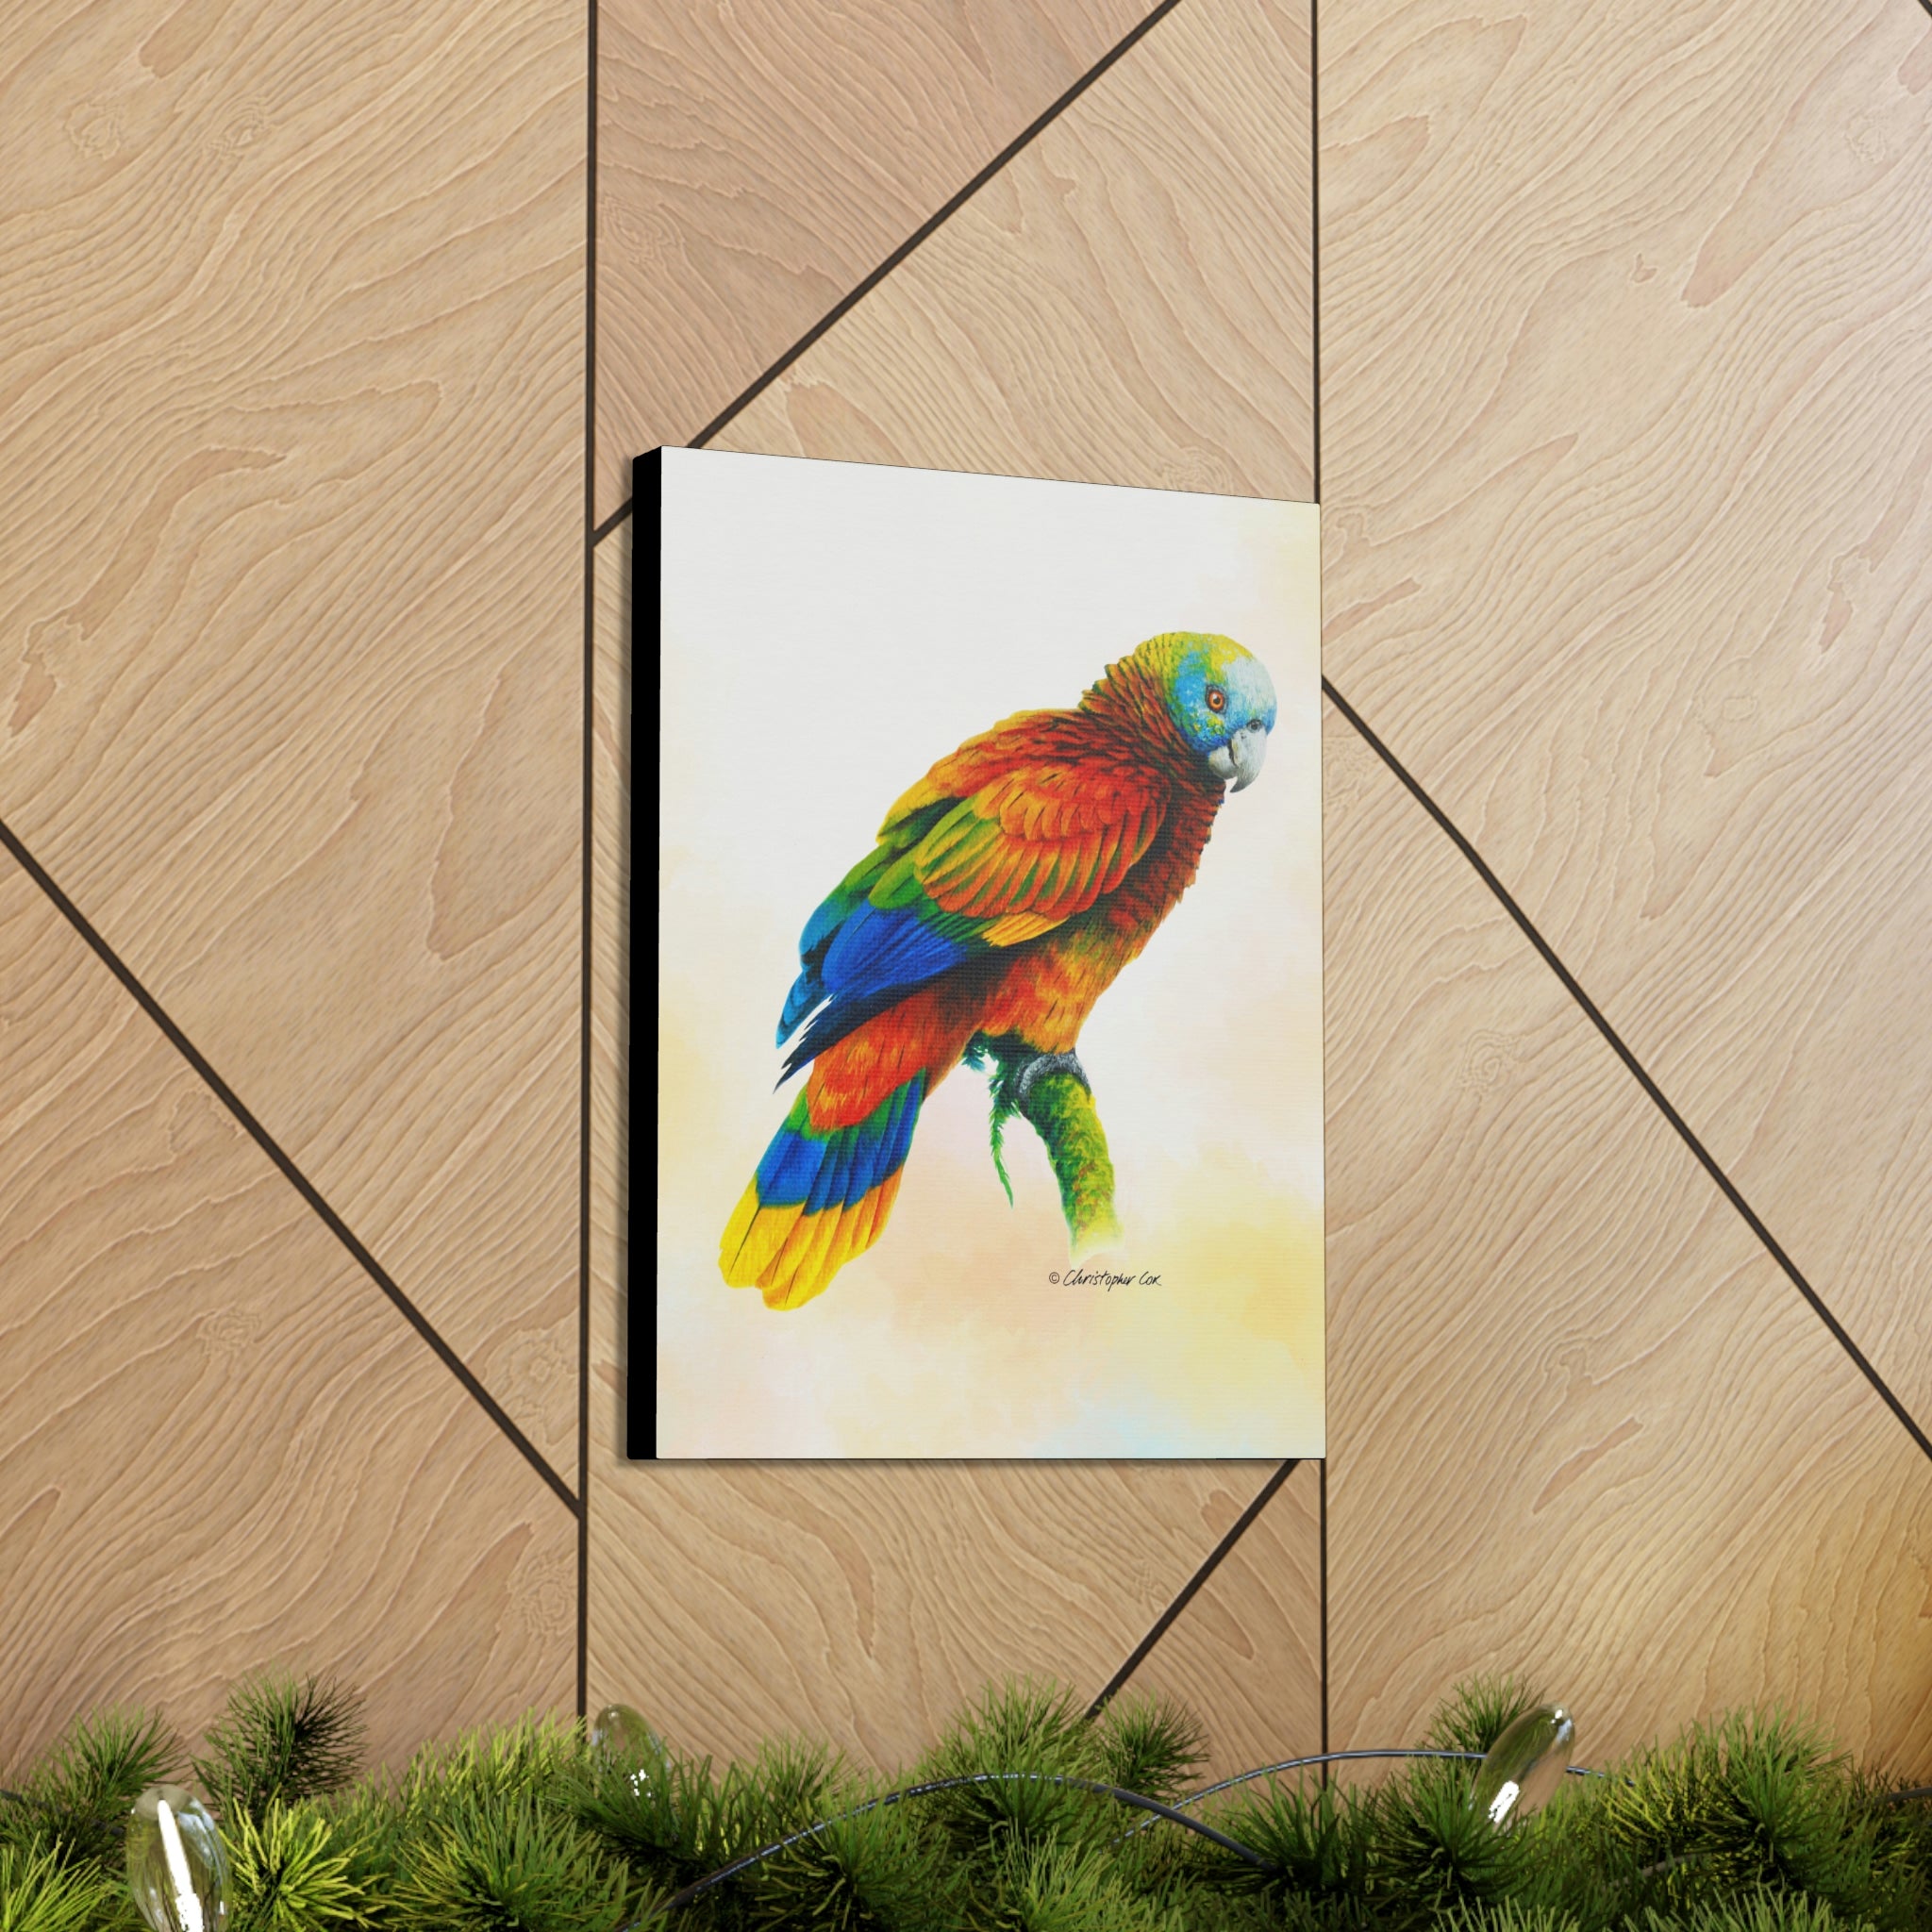 Canvas Wall Art, St Vincent Parrot, Parrot Art, Tropical Bird Art, Wildlife Art